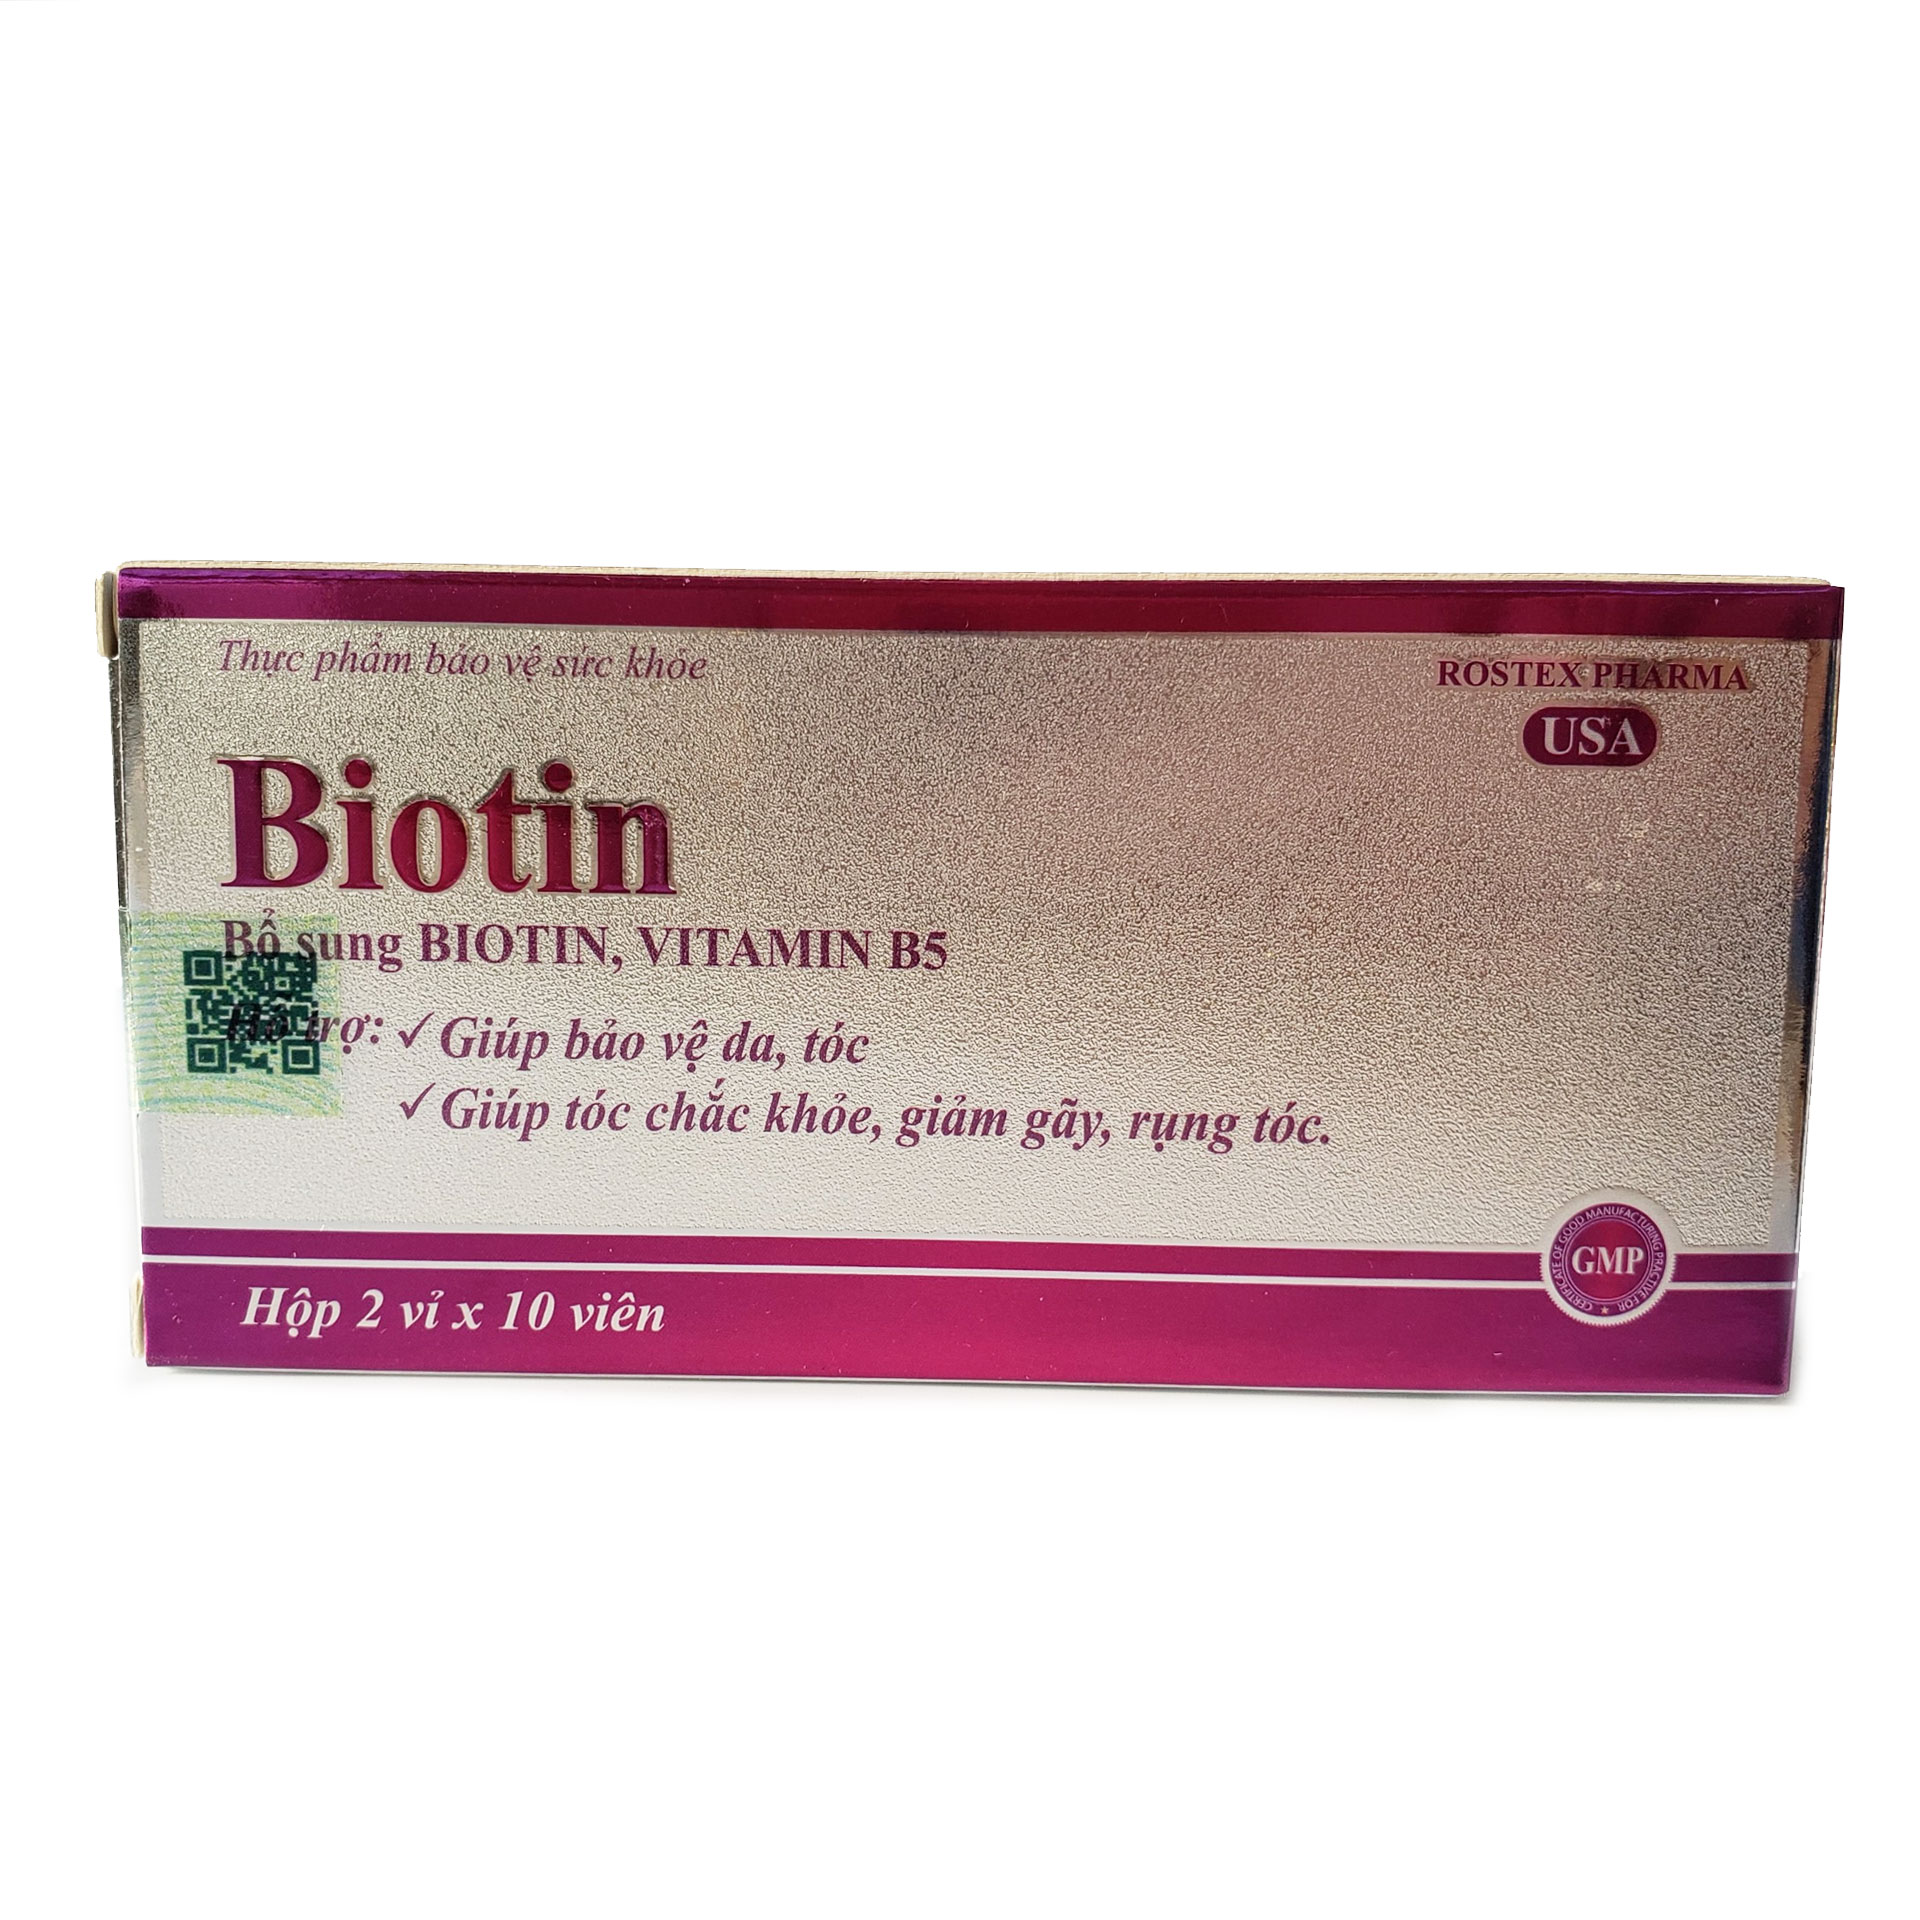 Viên uống bổ sung Biotin, Vitamin B5 Rostex giúp tóc chắc khỏe, giảm gãy rụng tóc, bảo vệ da tóc - Hộp 20 viên